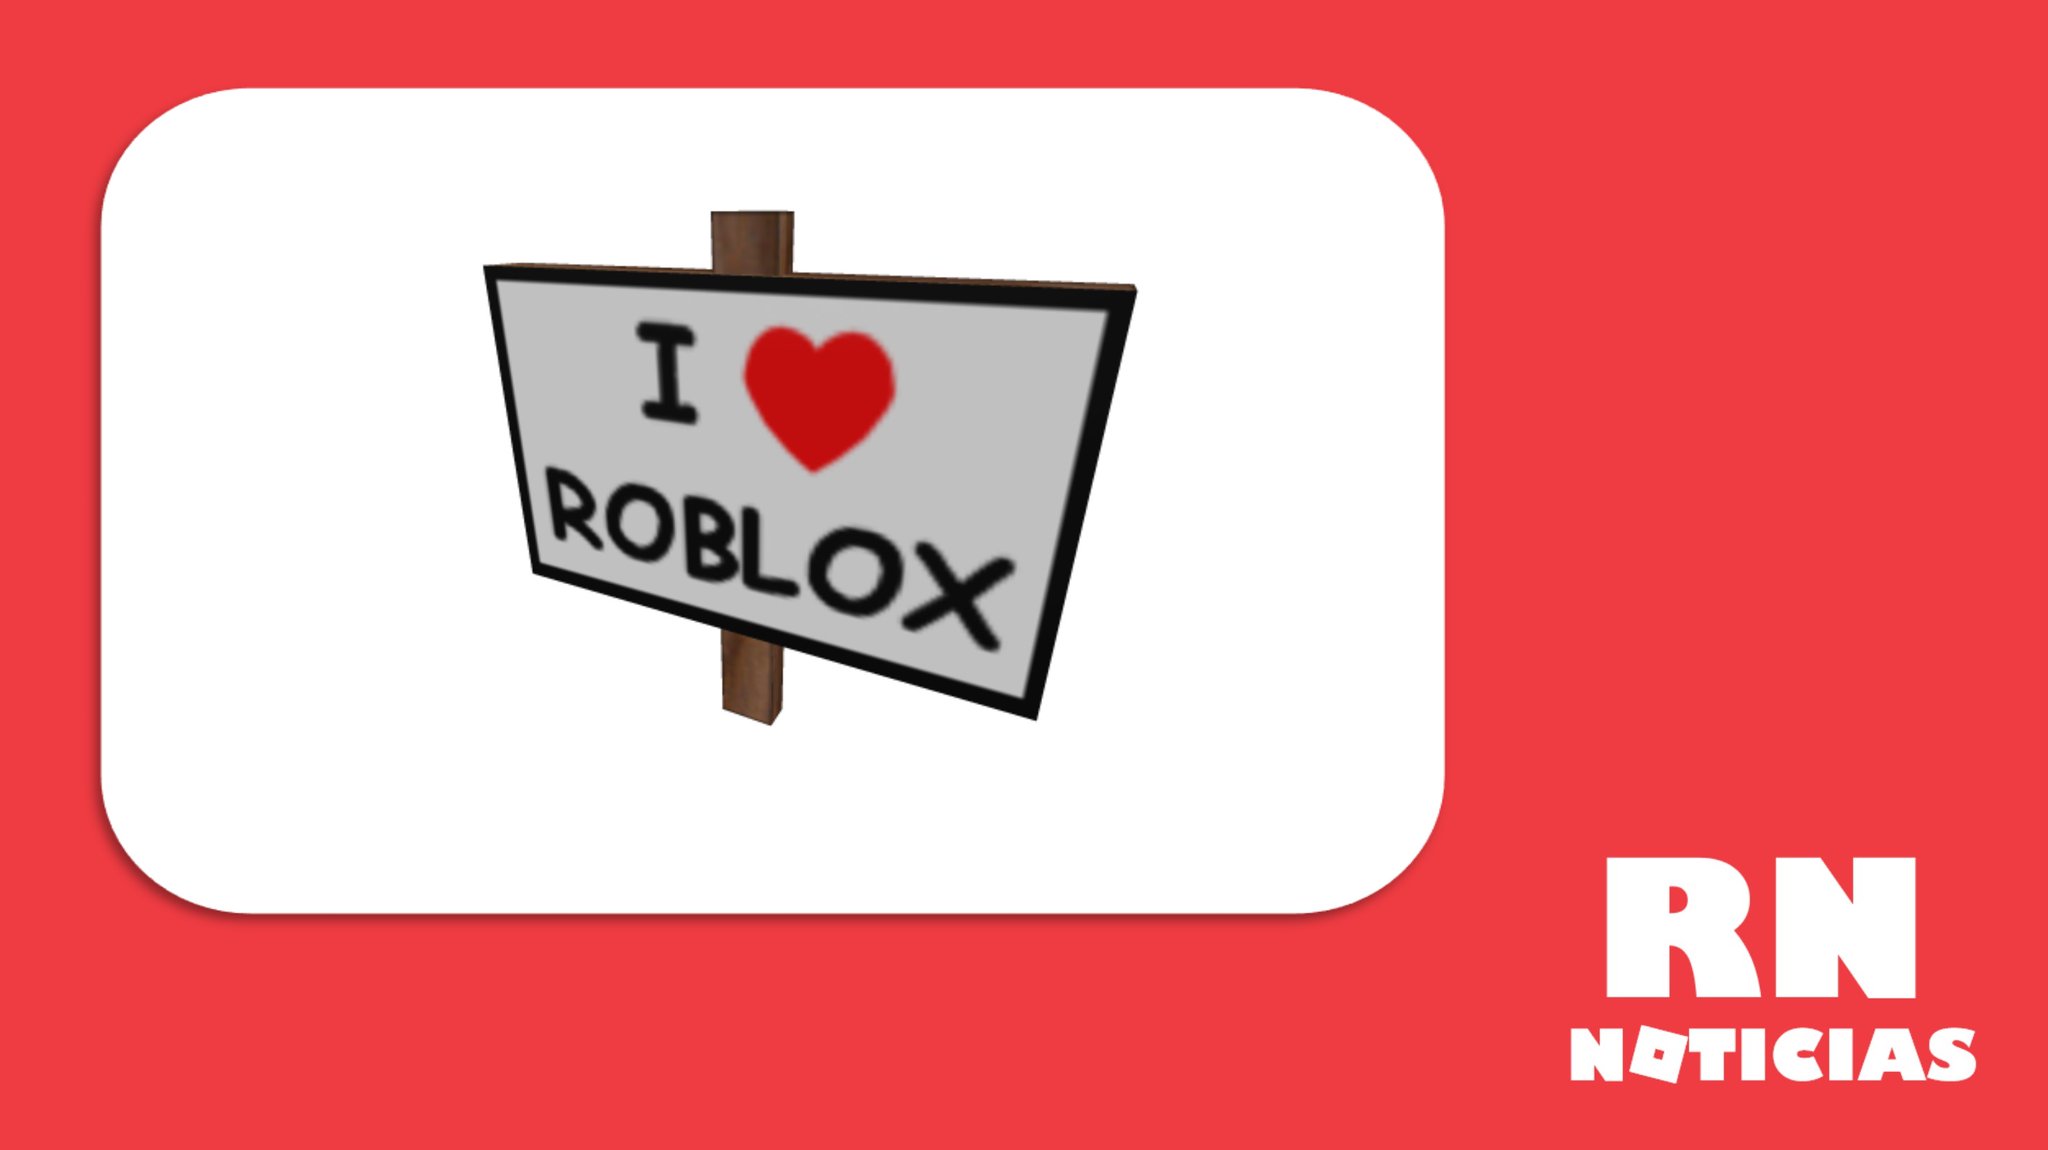 RN Noticias — Roblox 📰 on X: ¿Sabías qué? 🤔 Un día como hoy, pero hace  10 años, el 11 de febrero de 2013, murió a los 45 años de edad el